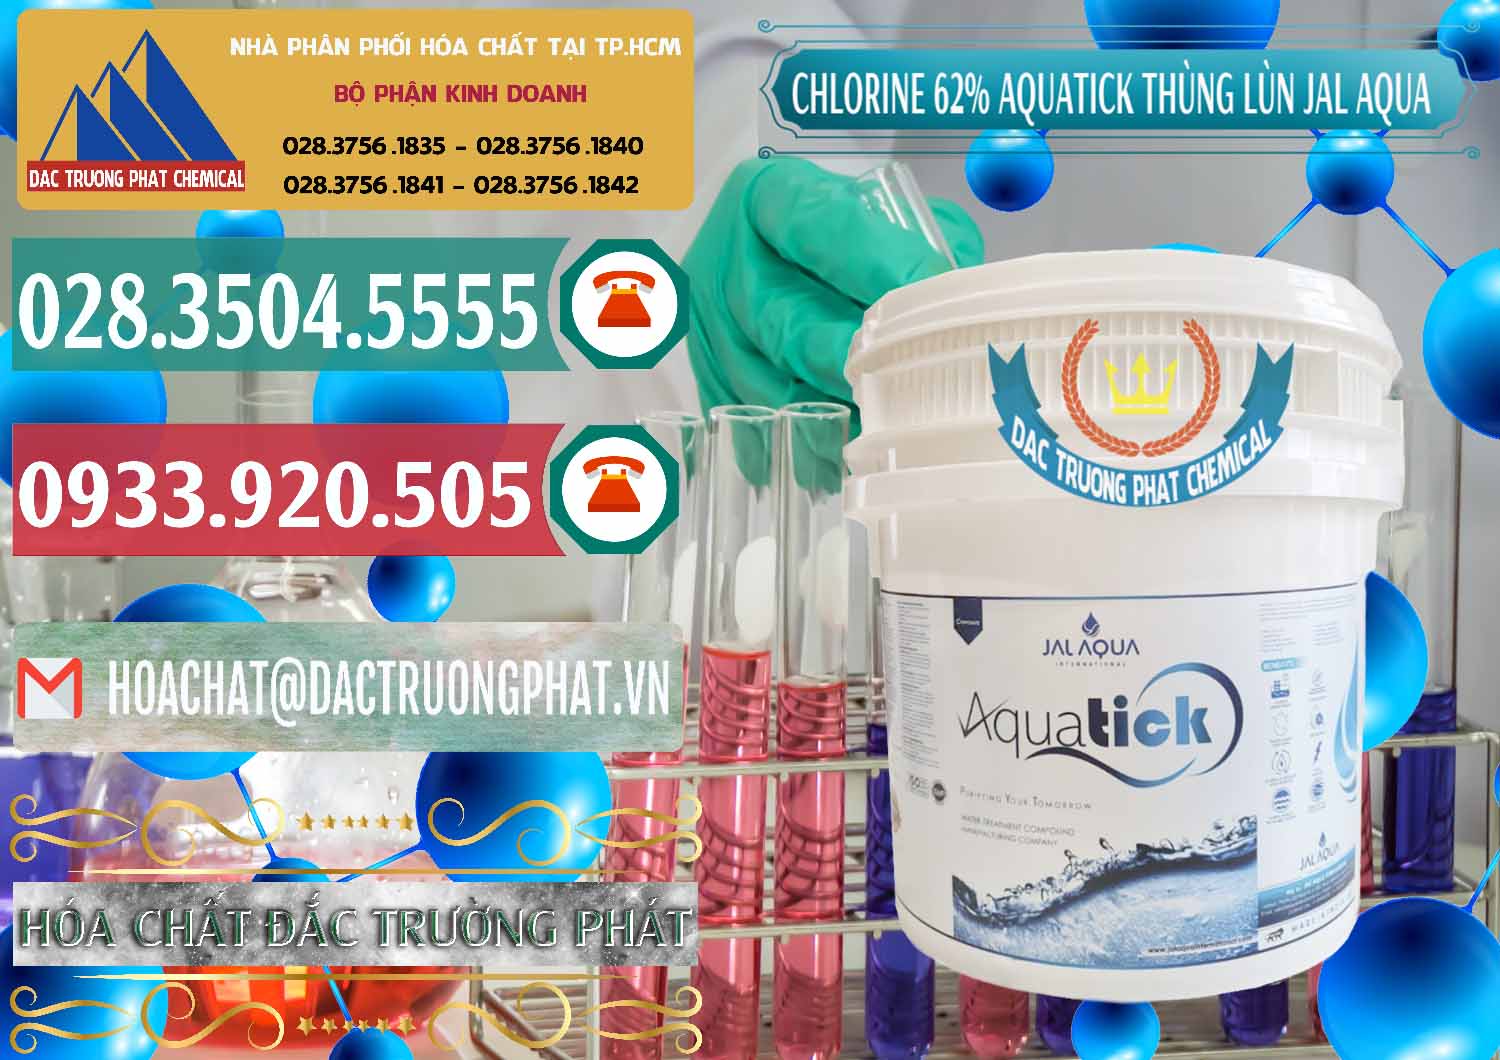 Cty chuyên bán - cung ứng Chlorine – Clorin 62% Aquatick Thùng Lùn Jal Aqua Ấn Độ India - 0238 - Cty cung ứng - phân phối hóa chất tại TP.HCM - muabanhoachat.vn